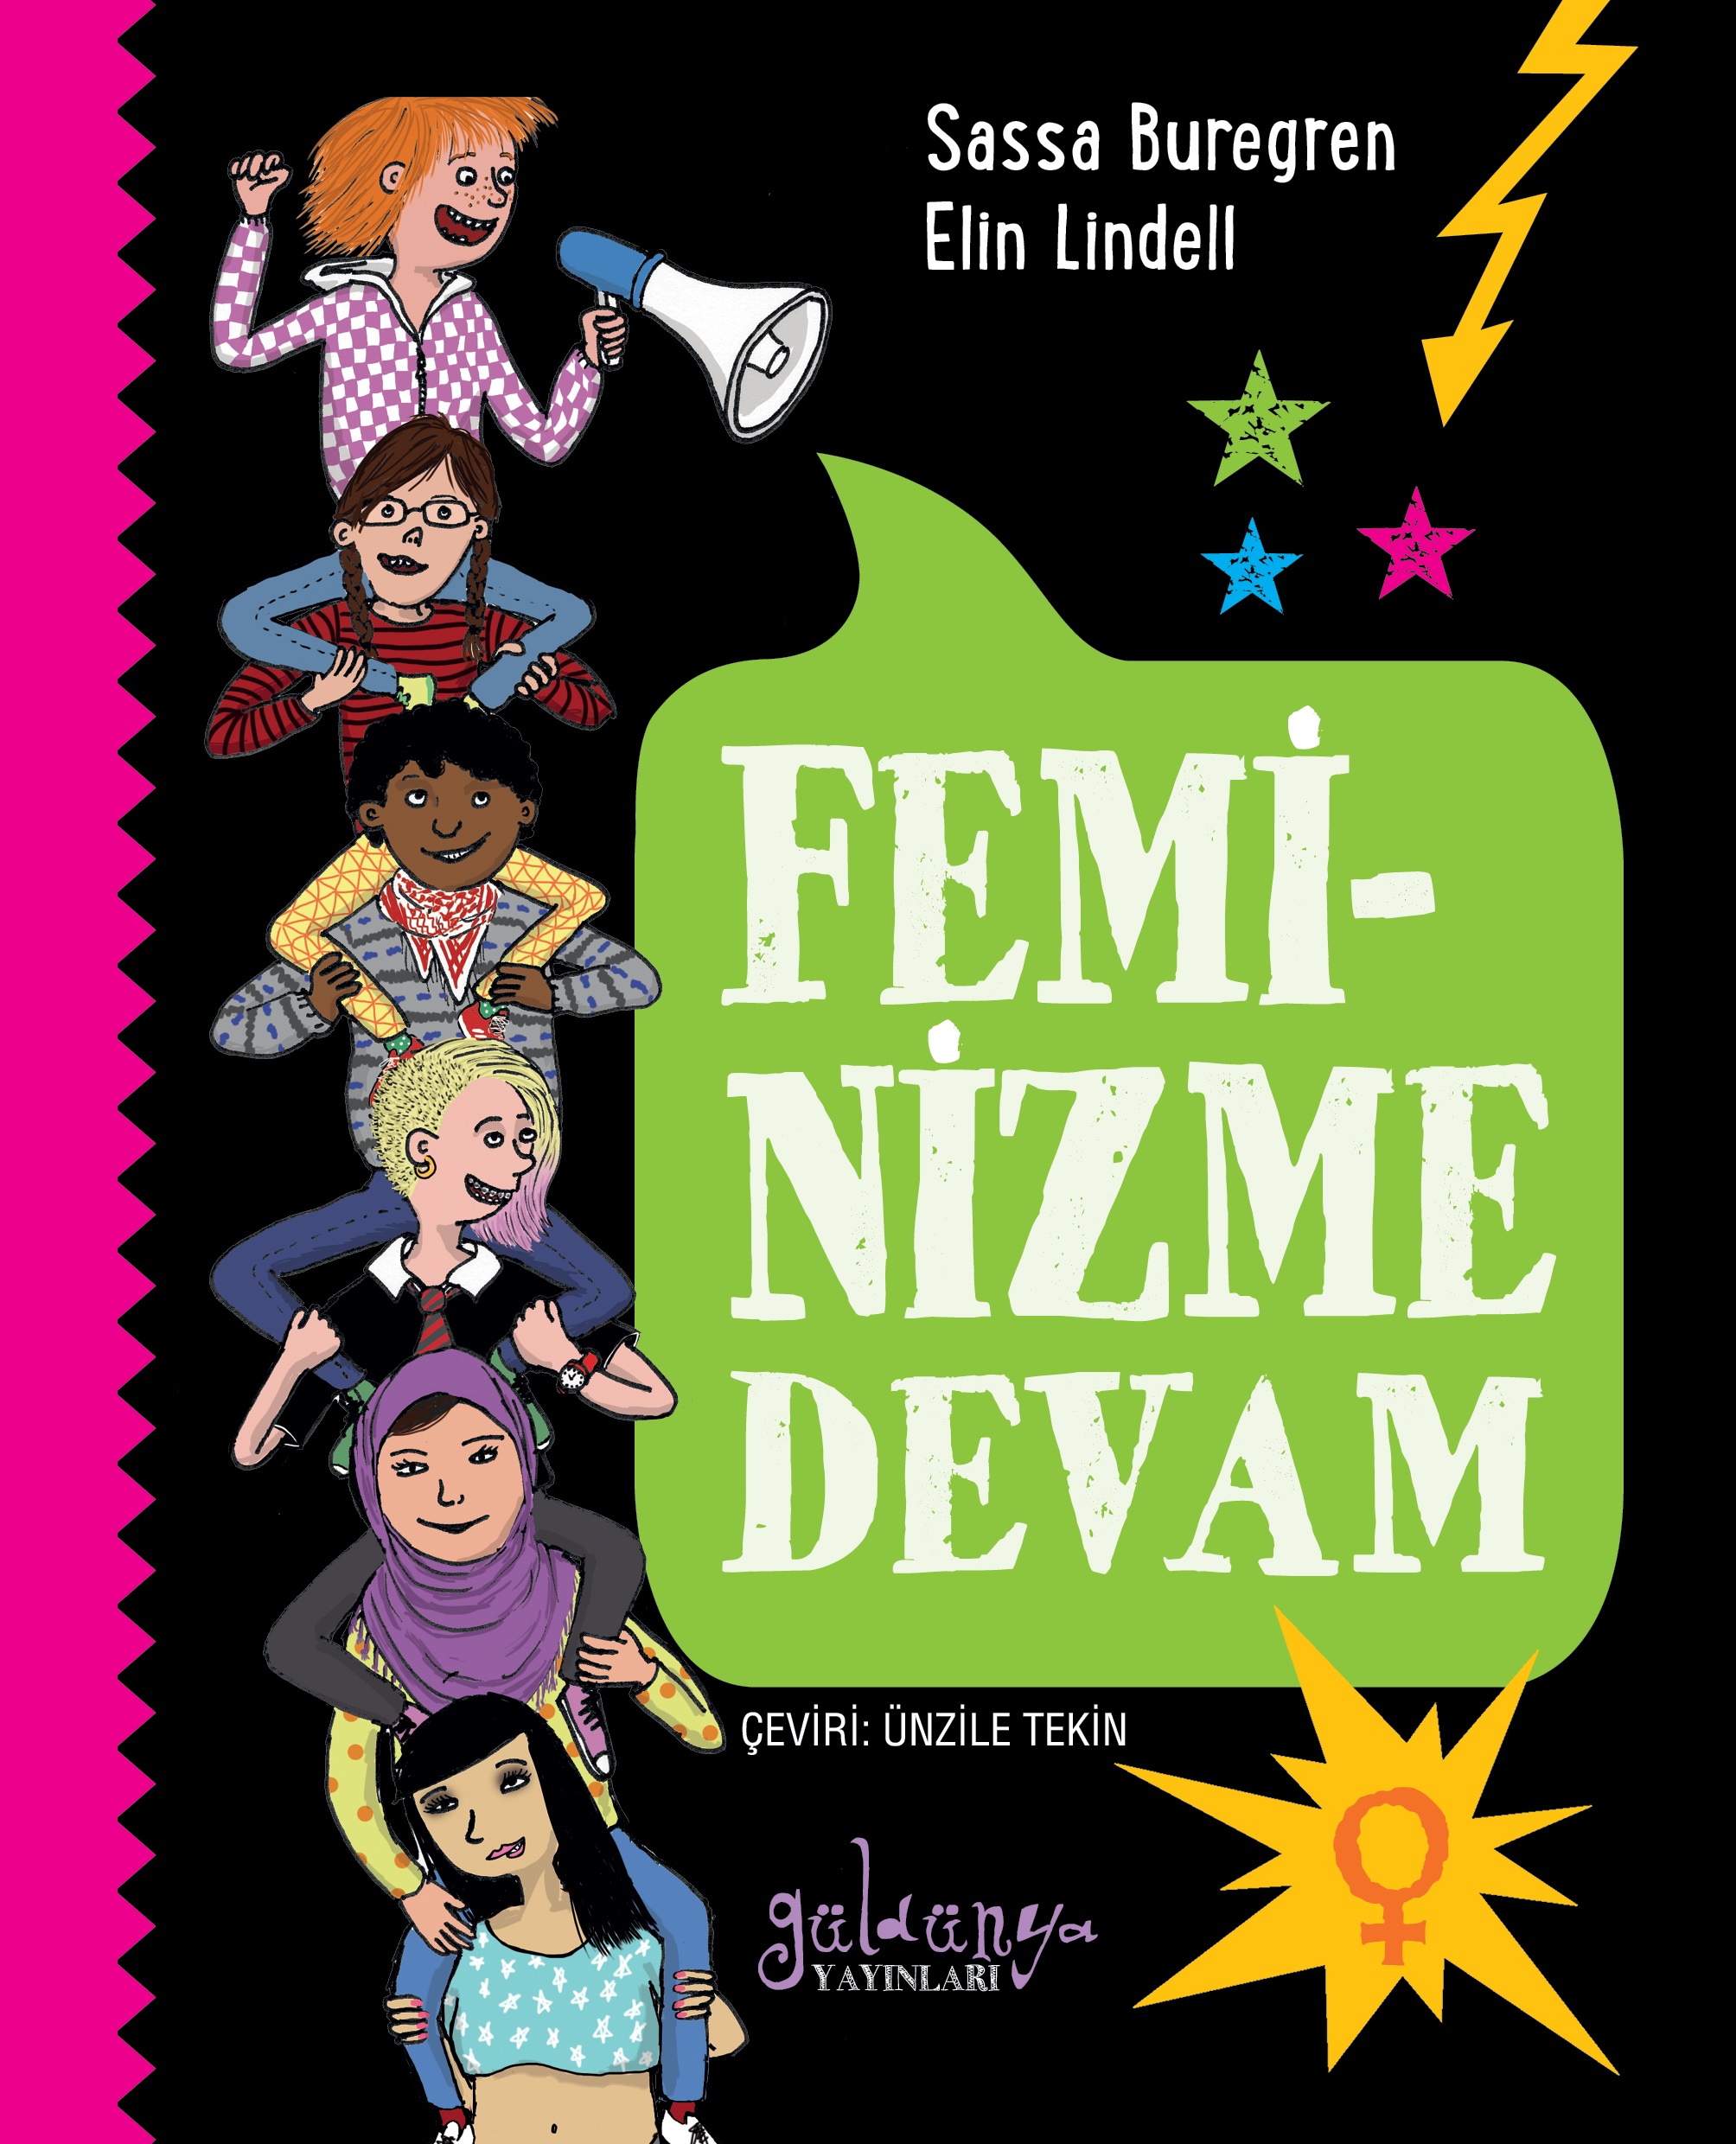 Feminizme Devam, Sassa Buregren-Elin Lindell, Çeviri: Ünzile Tekin, Güldünya Yayınları